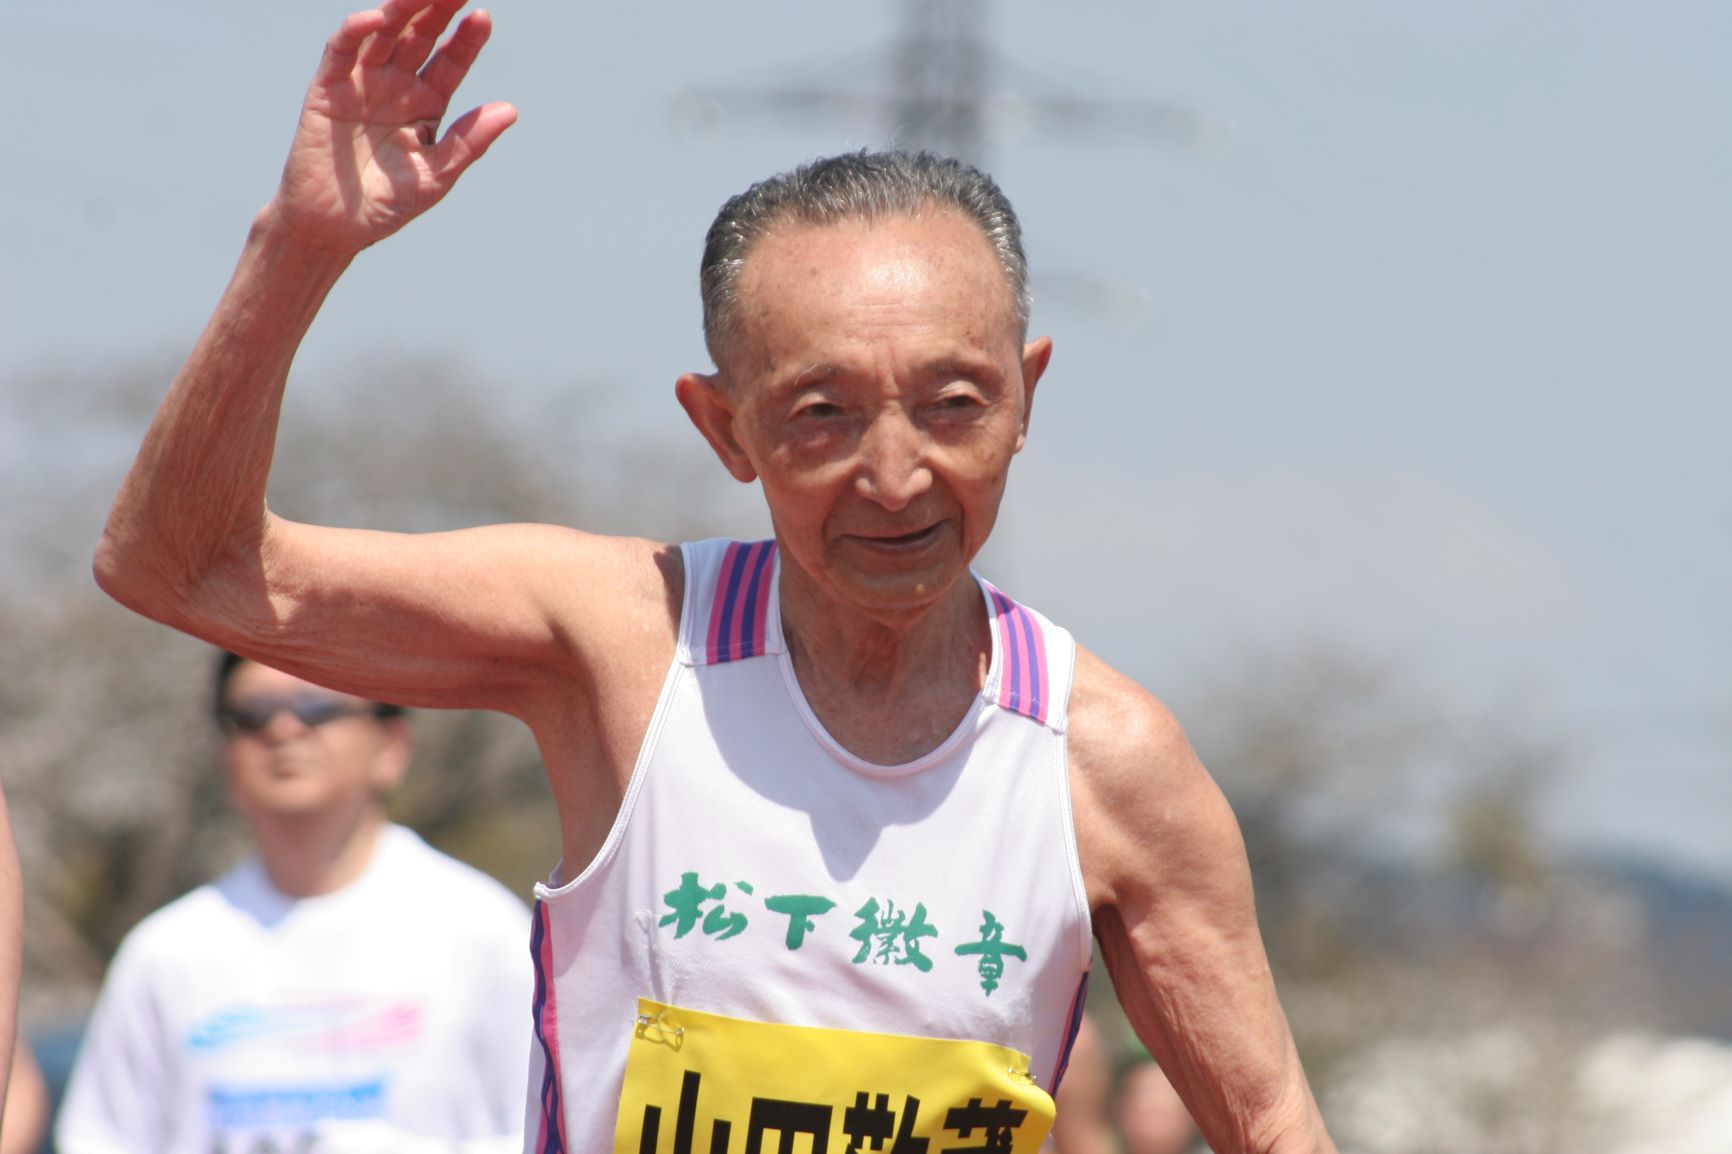 生涯走行距離なんと地球9周分！80代まで走り続けたマラソン選手山田敬蔵の生き様とは